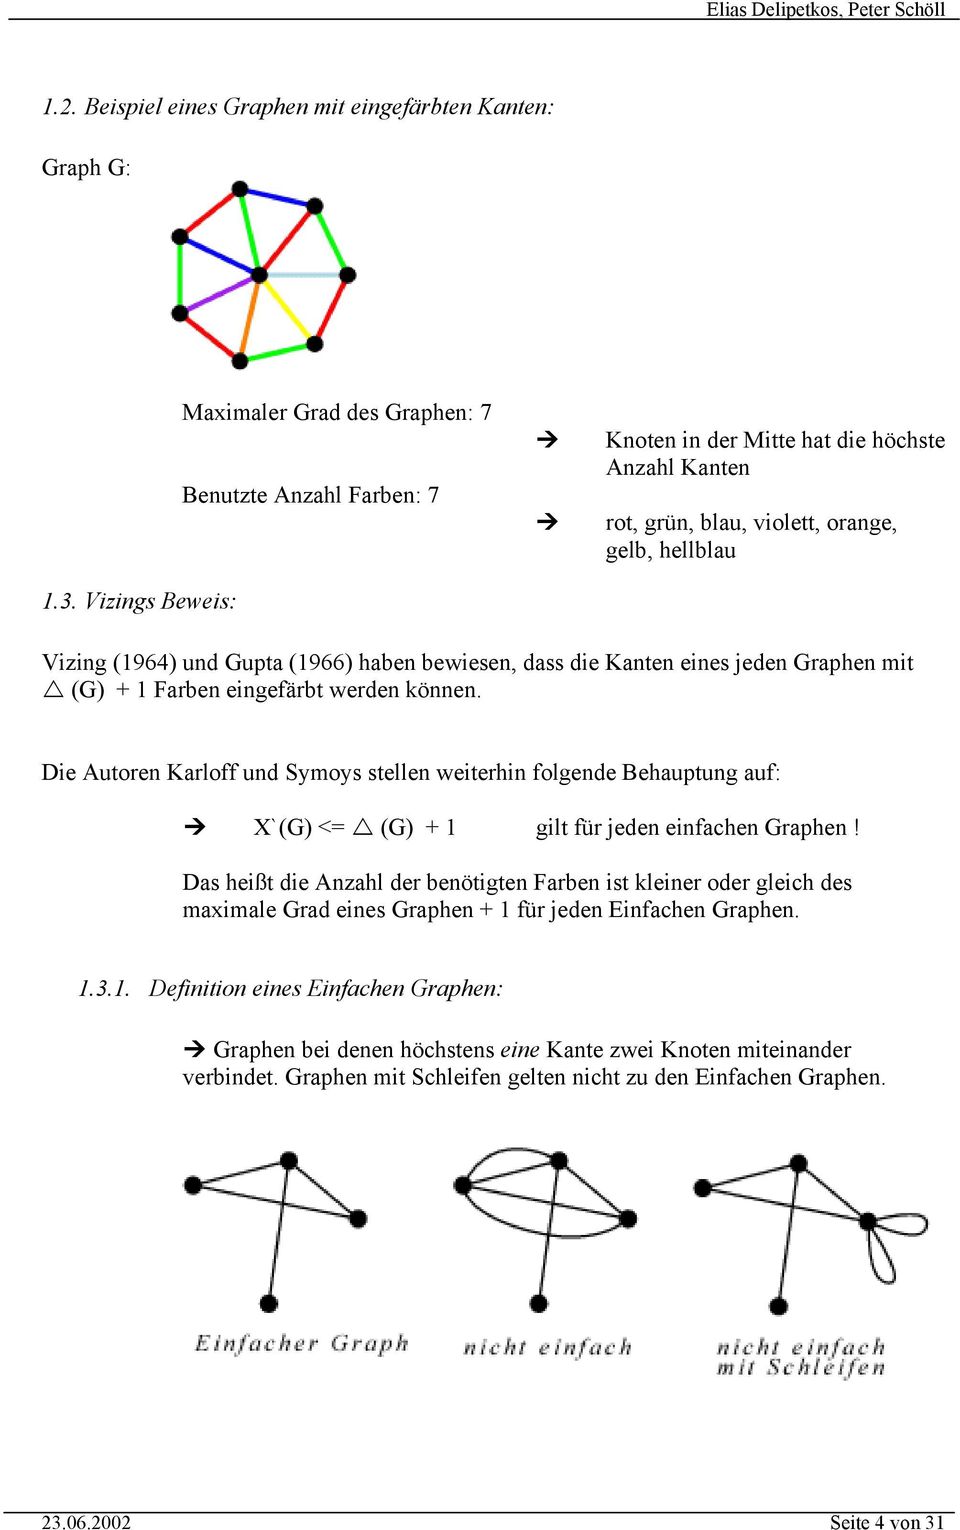 (1966) haben bewiesen, dass die Kanten eines jeden Graphen mit (G) + 1 Farben eingefärbt werden können.